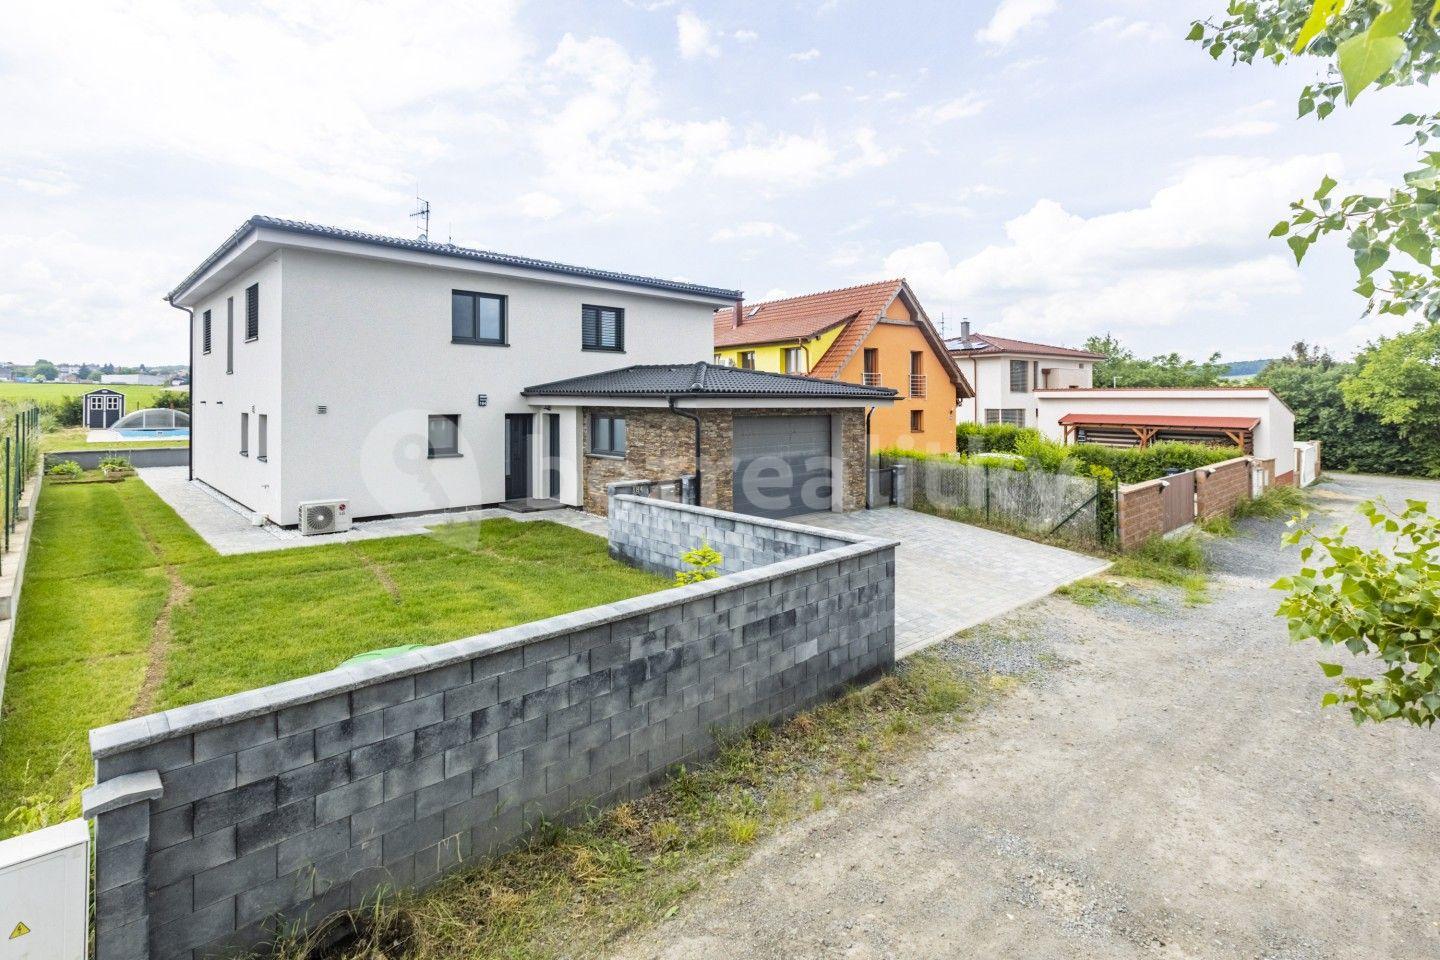 Predaj domu 285 m², pozemek 850 m², V sazenicích, Bořanovice, Středočeský kraj